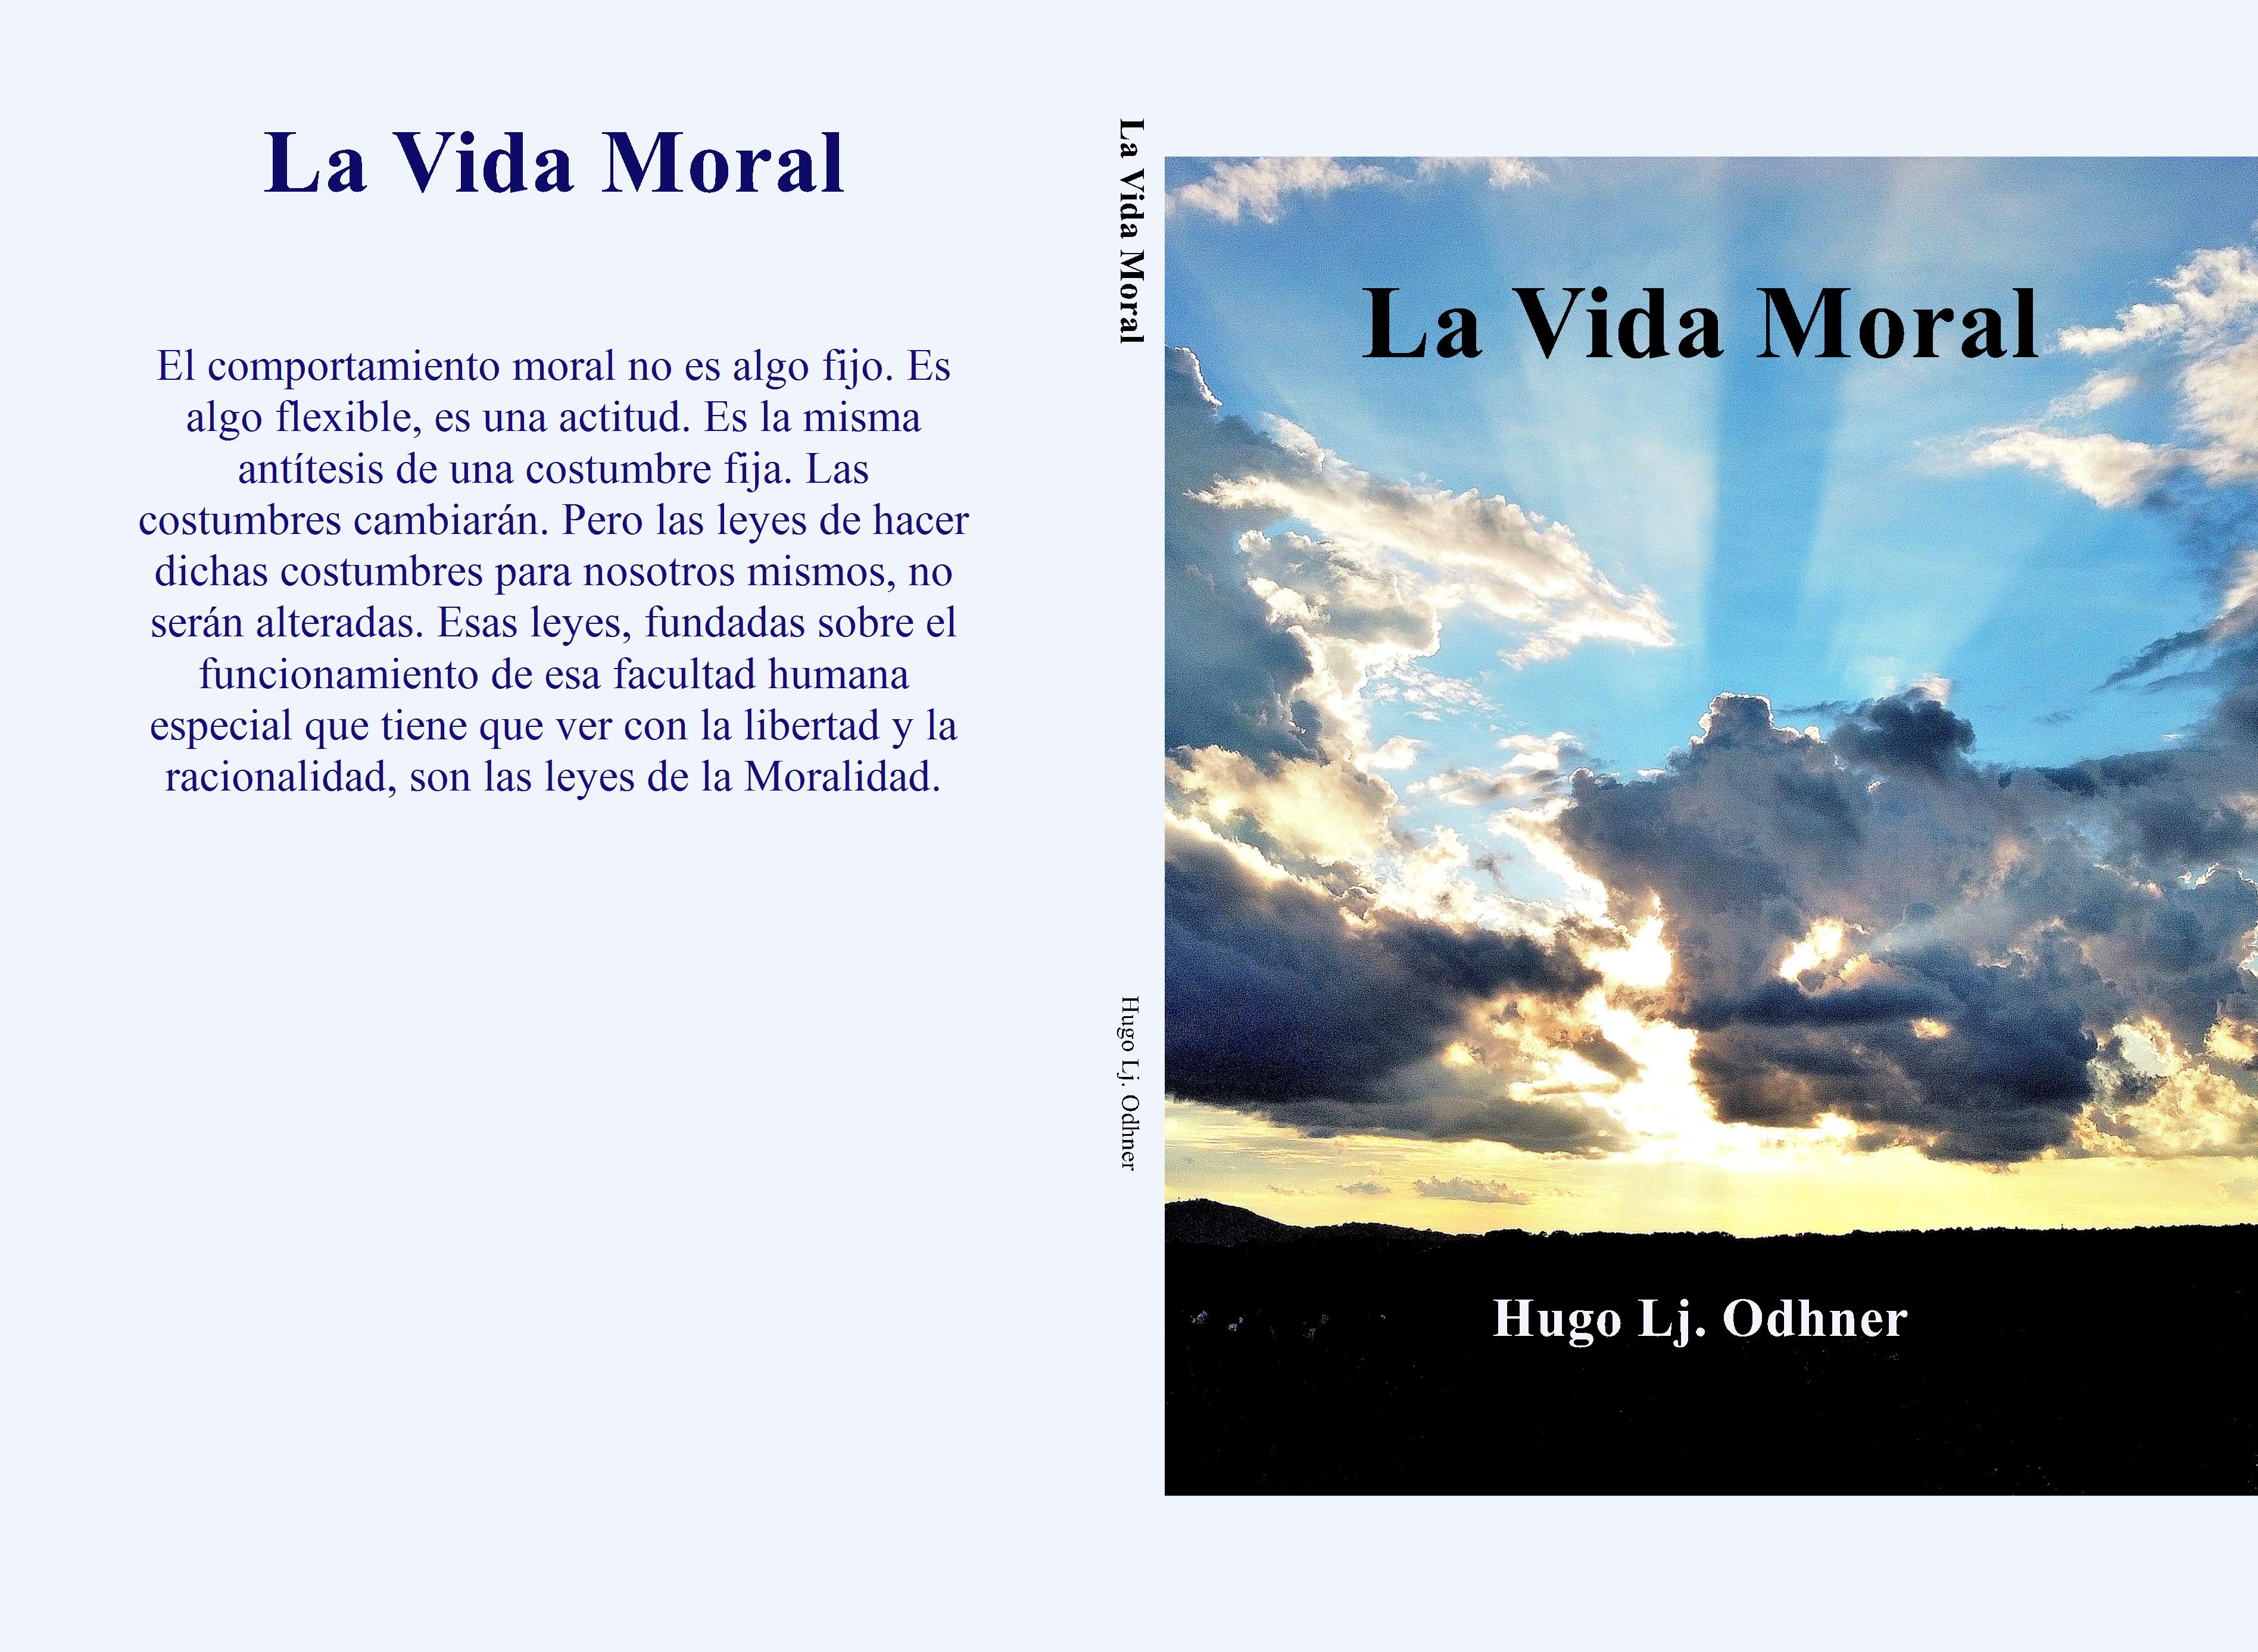 La Vida Moral cover image